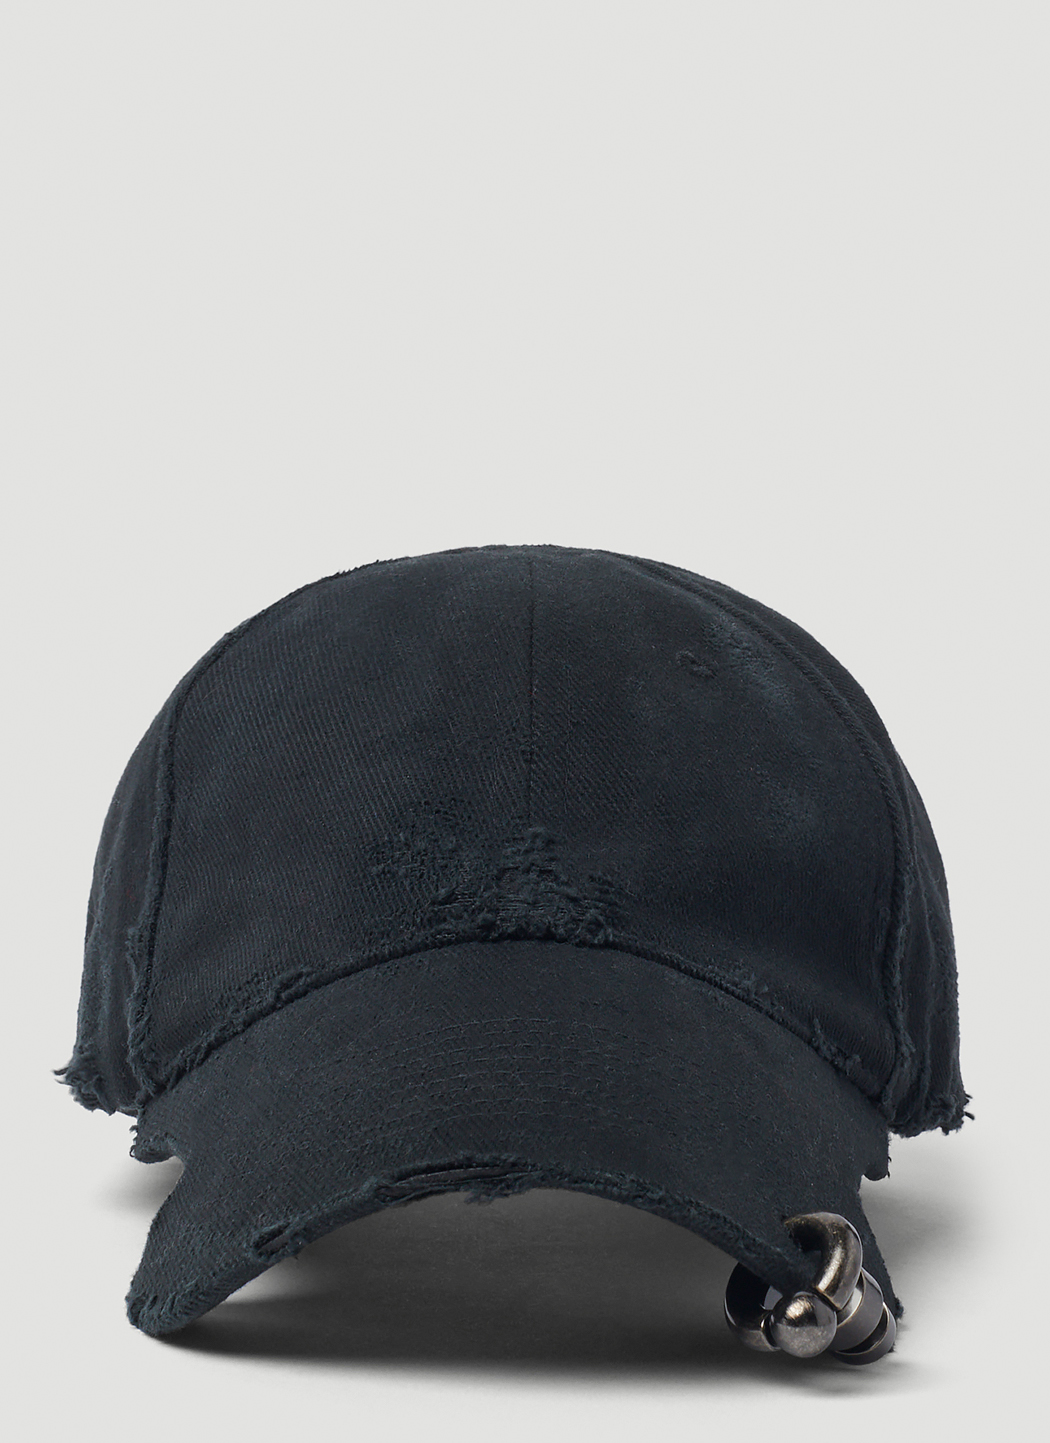 Balenciaga Men's Piercing Baseball Cap in Black | LN-CC®